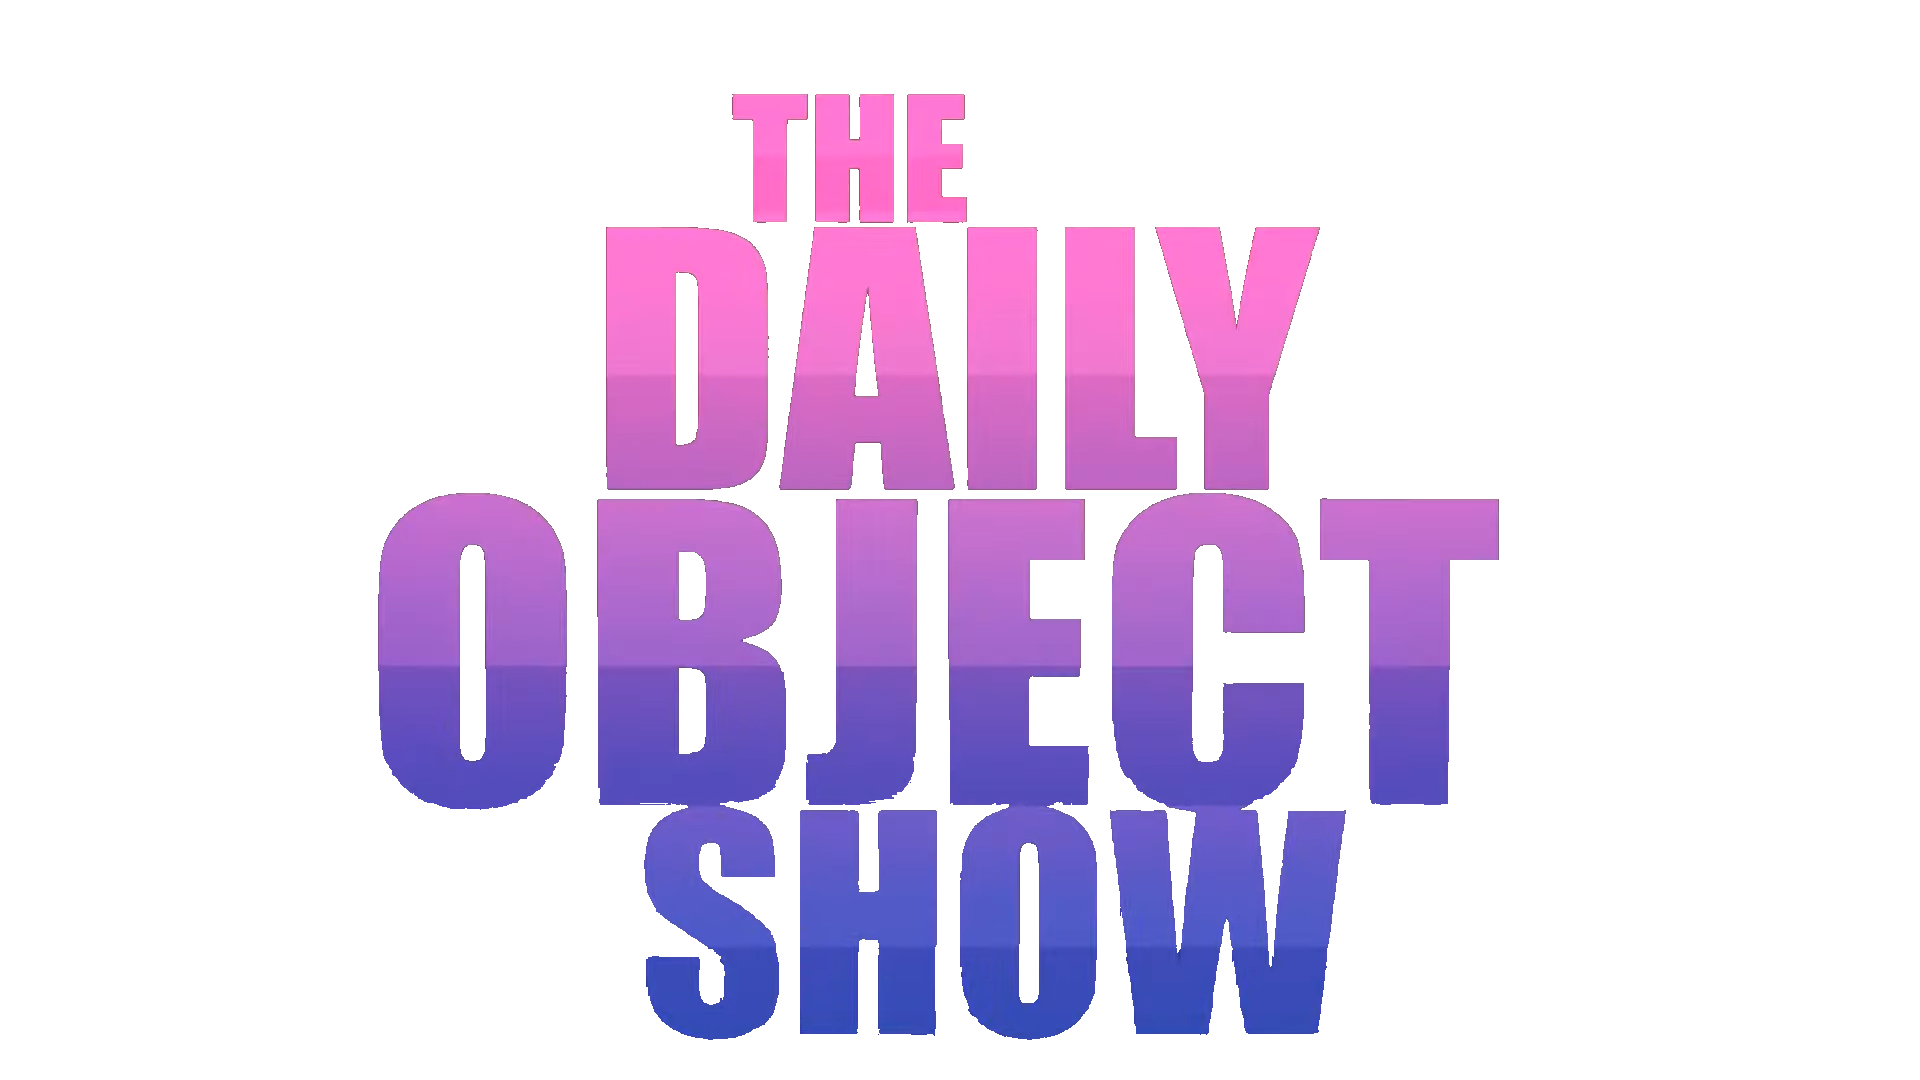 The Daily Object Show. The Daily Object Show